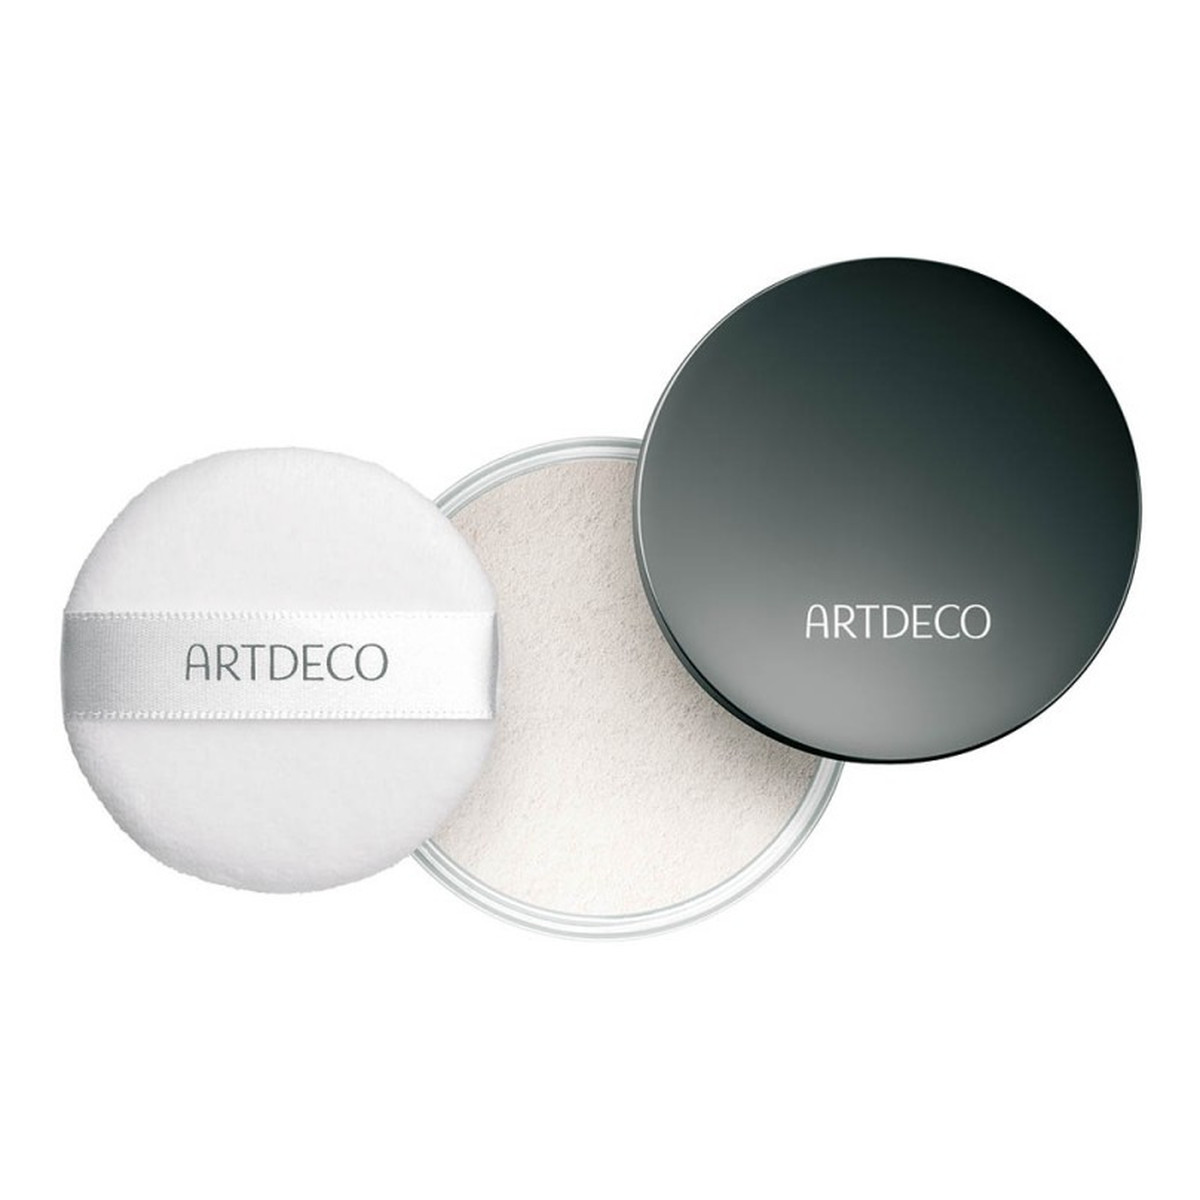 ArtDeco Setting Powder Compact transparentny puder utrwalający makijaż wkład 7g